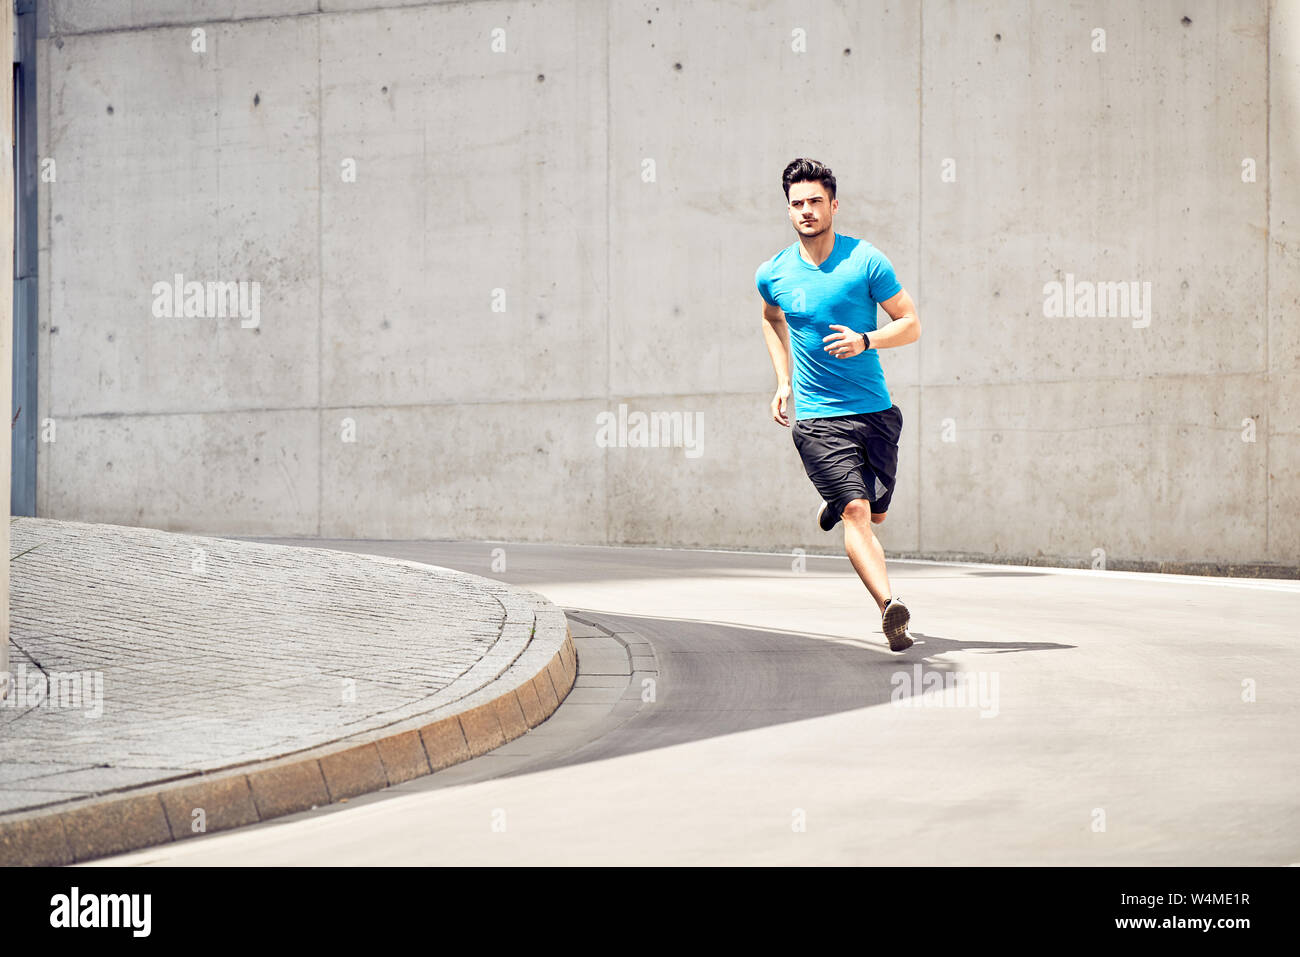 Colocar hombre corriendo durante la sesión de entrenamiento en la ciudad. Concepto de salud y deporte Foto de stock